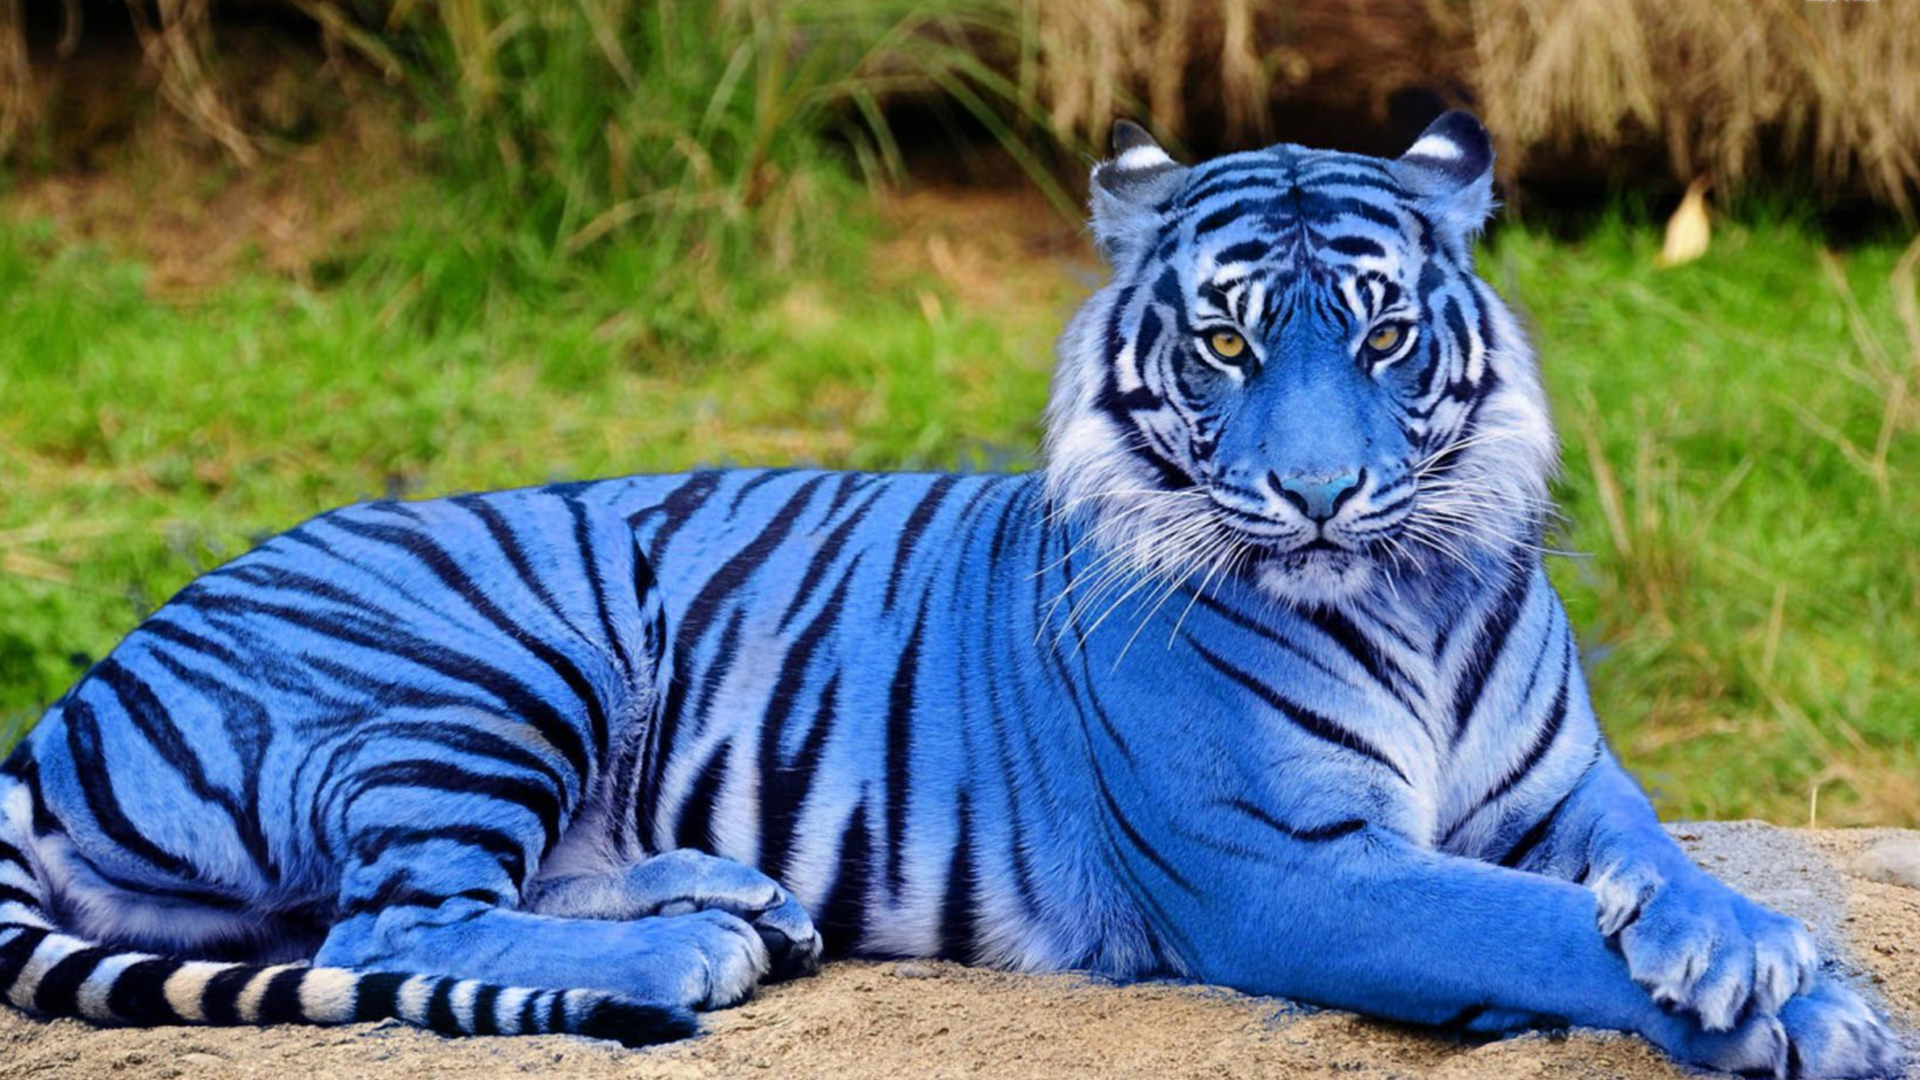 老虎一共有几个亚种?白虎和金虎是独立亚种吗?